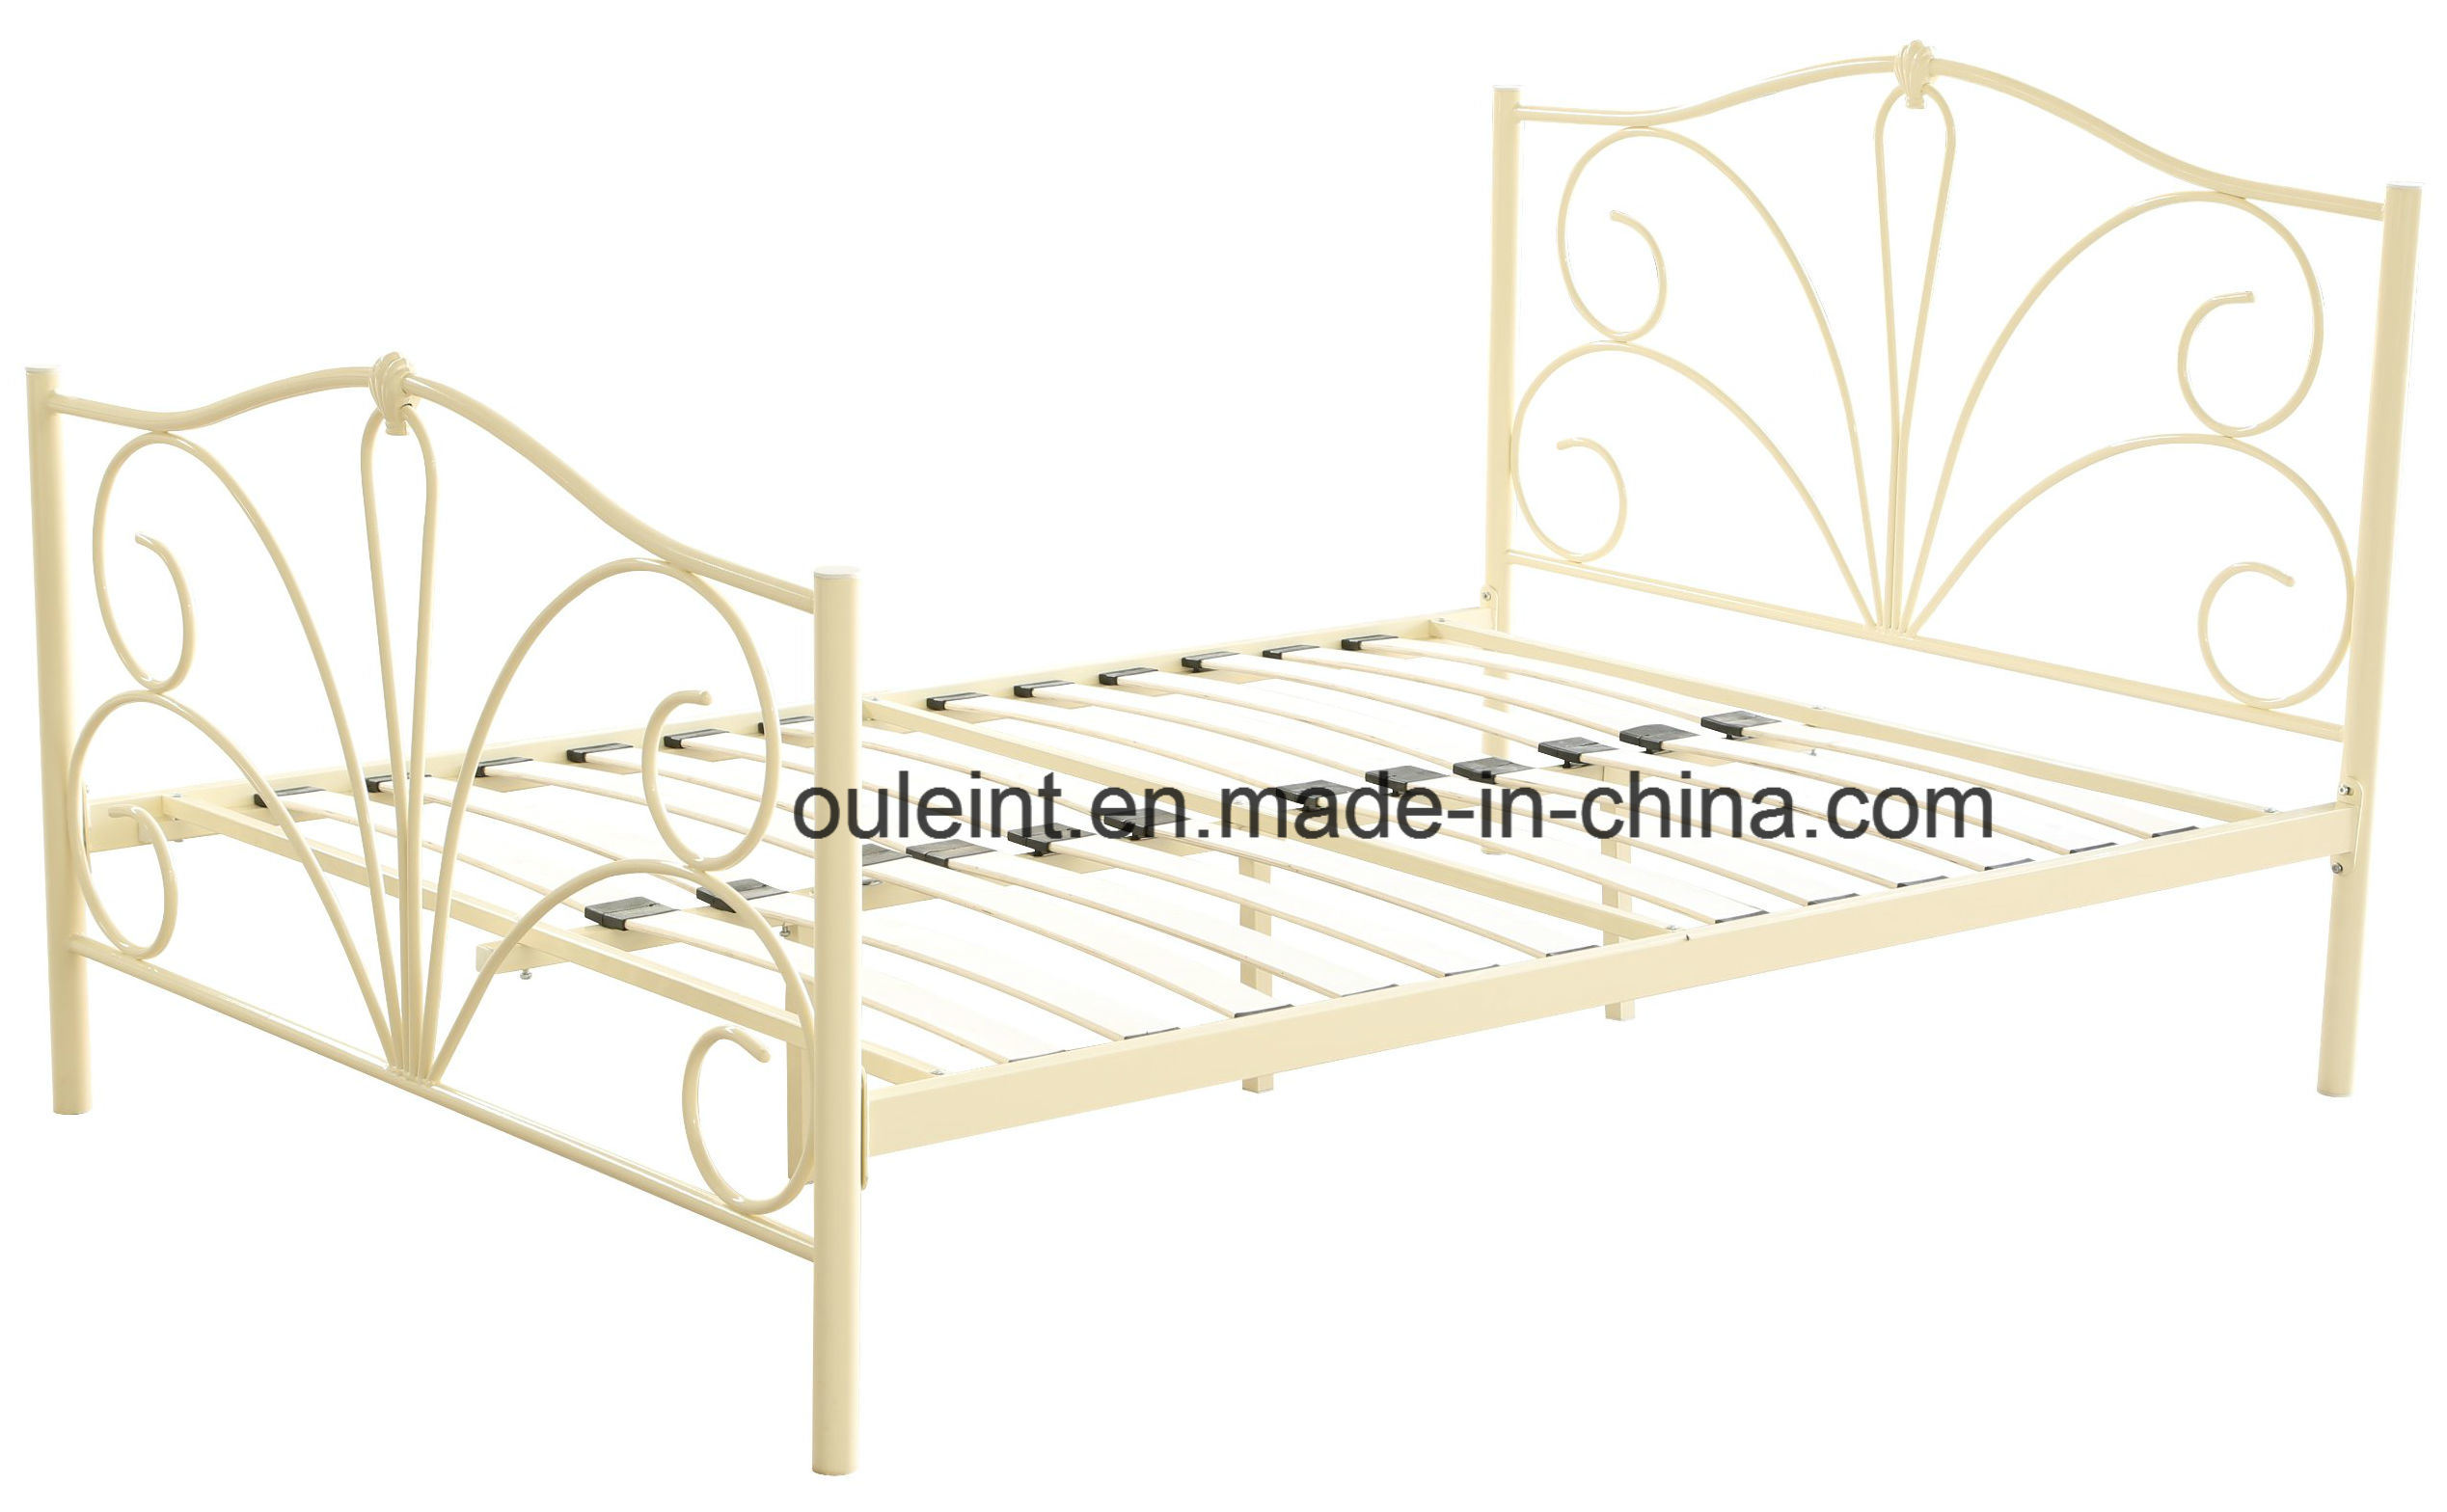 Morden Metal Double Bed (OL17157)